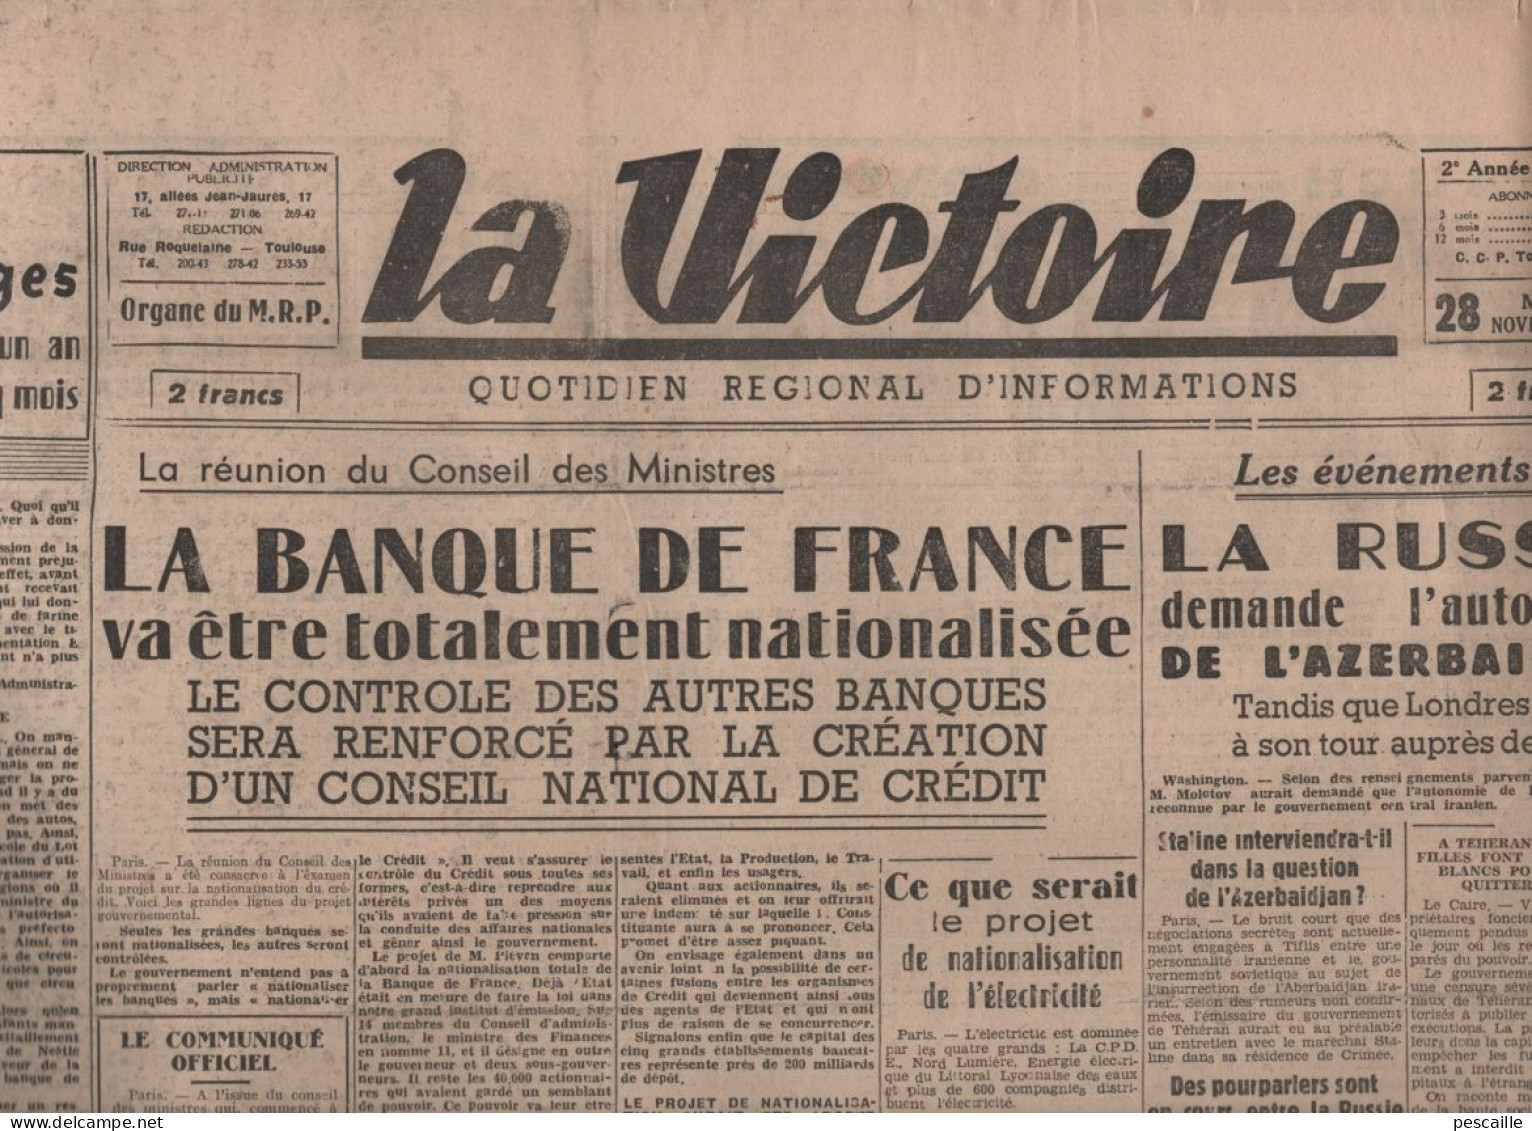 LA VICTOIRE 28 11 1945 - PROCES NUREMBERG - NATIONALISATION BANQUE DE FRANCE - TOULOUSE 274 ENFANTS MORTS - AZERBAIDJAN - Testi Generali